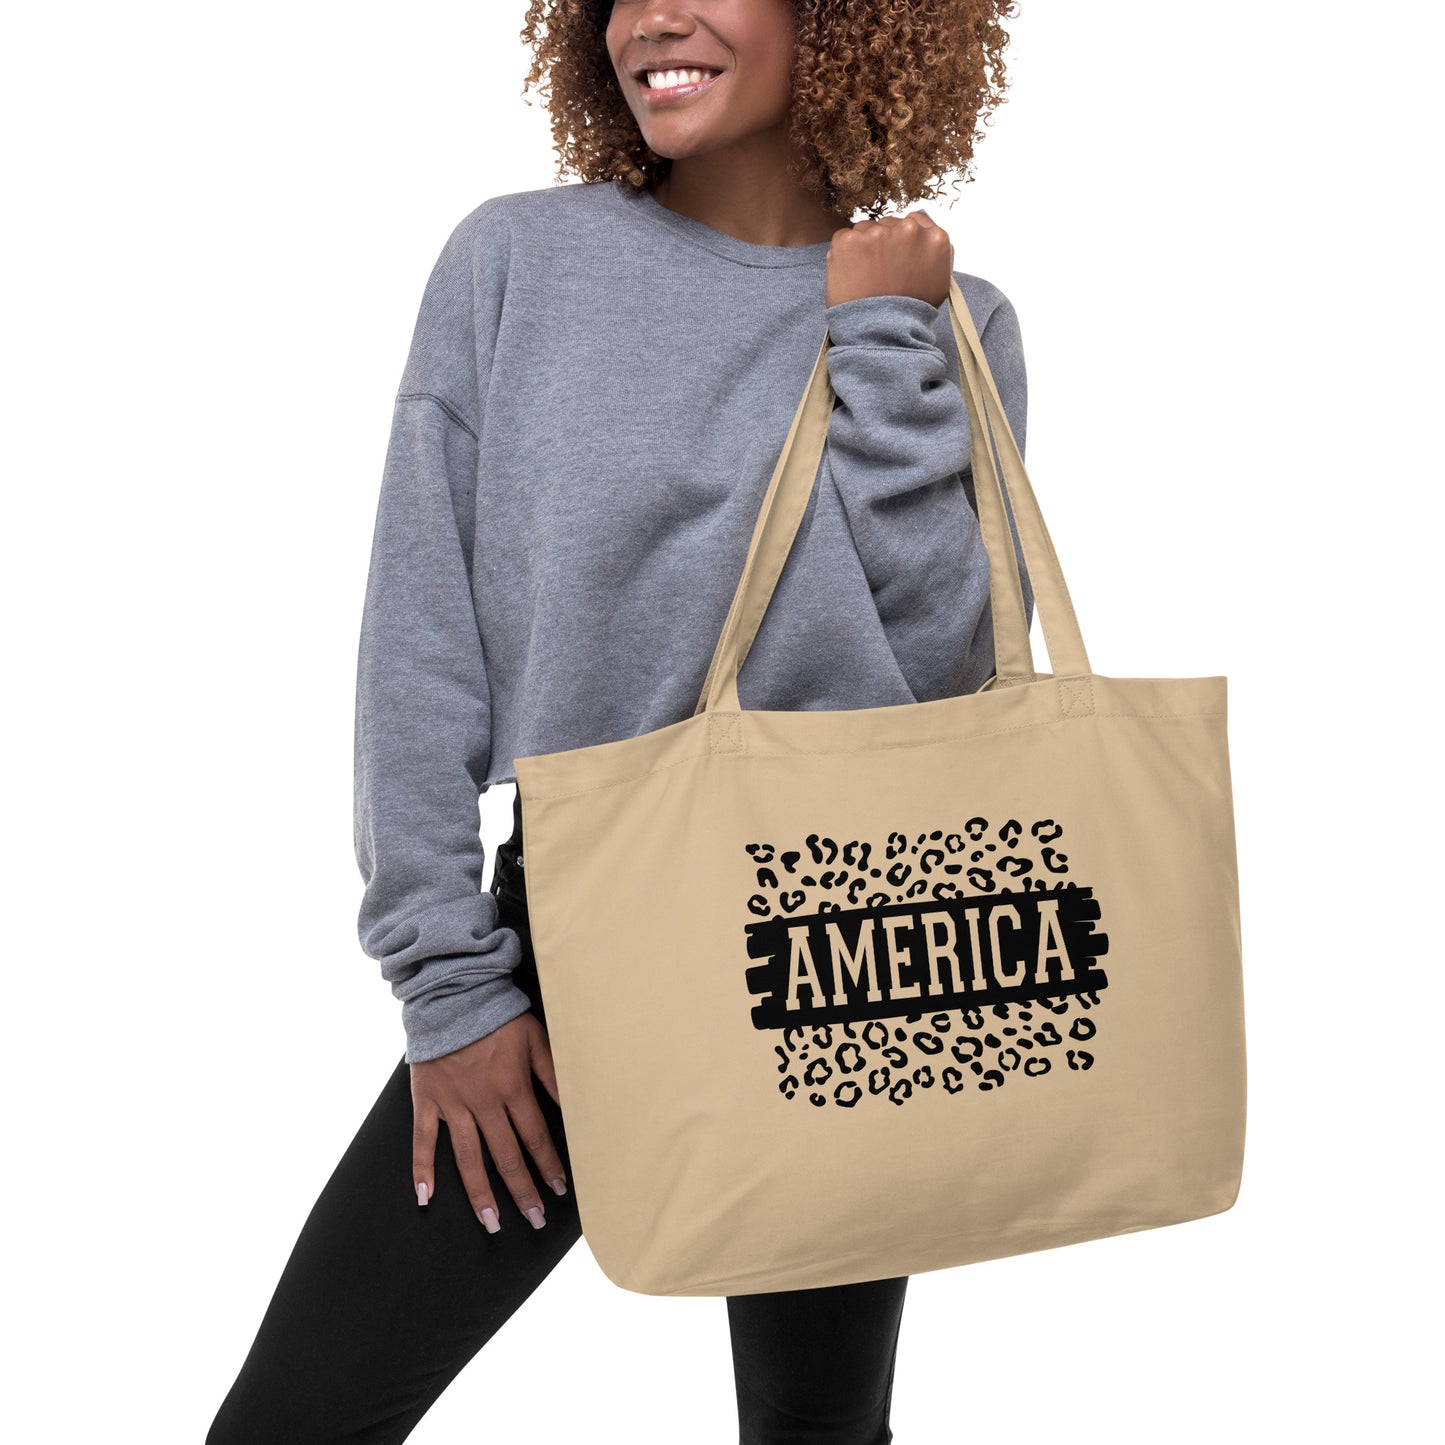 America Large organic tote bag